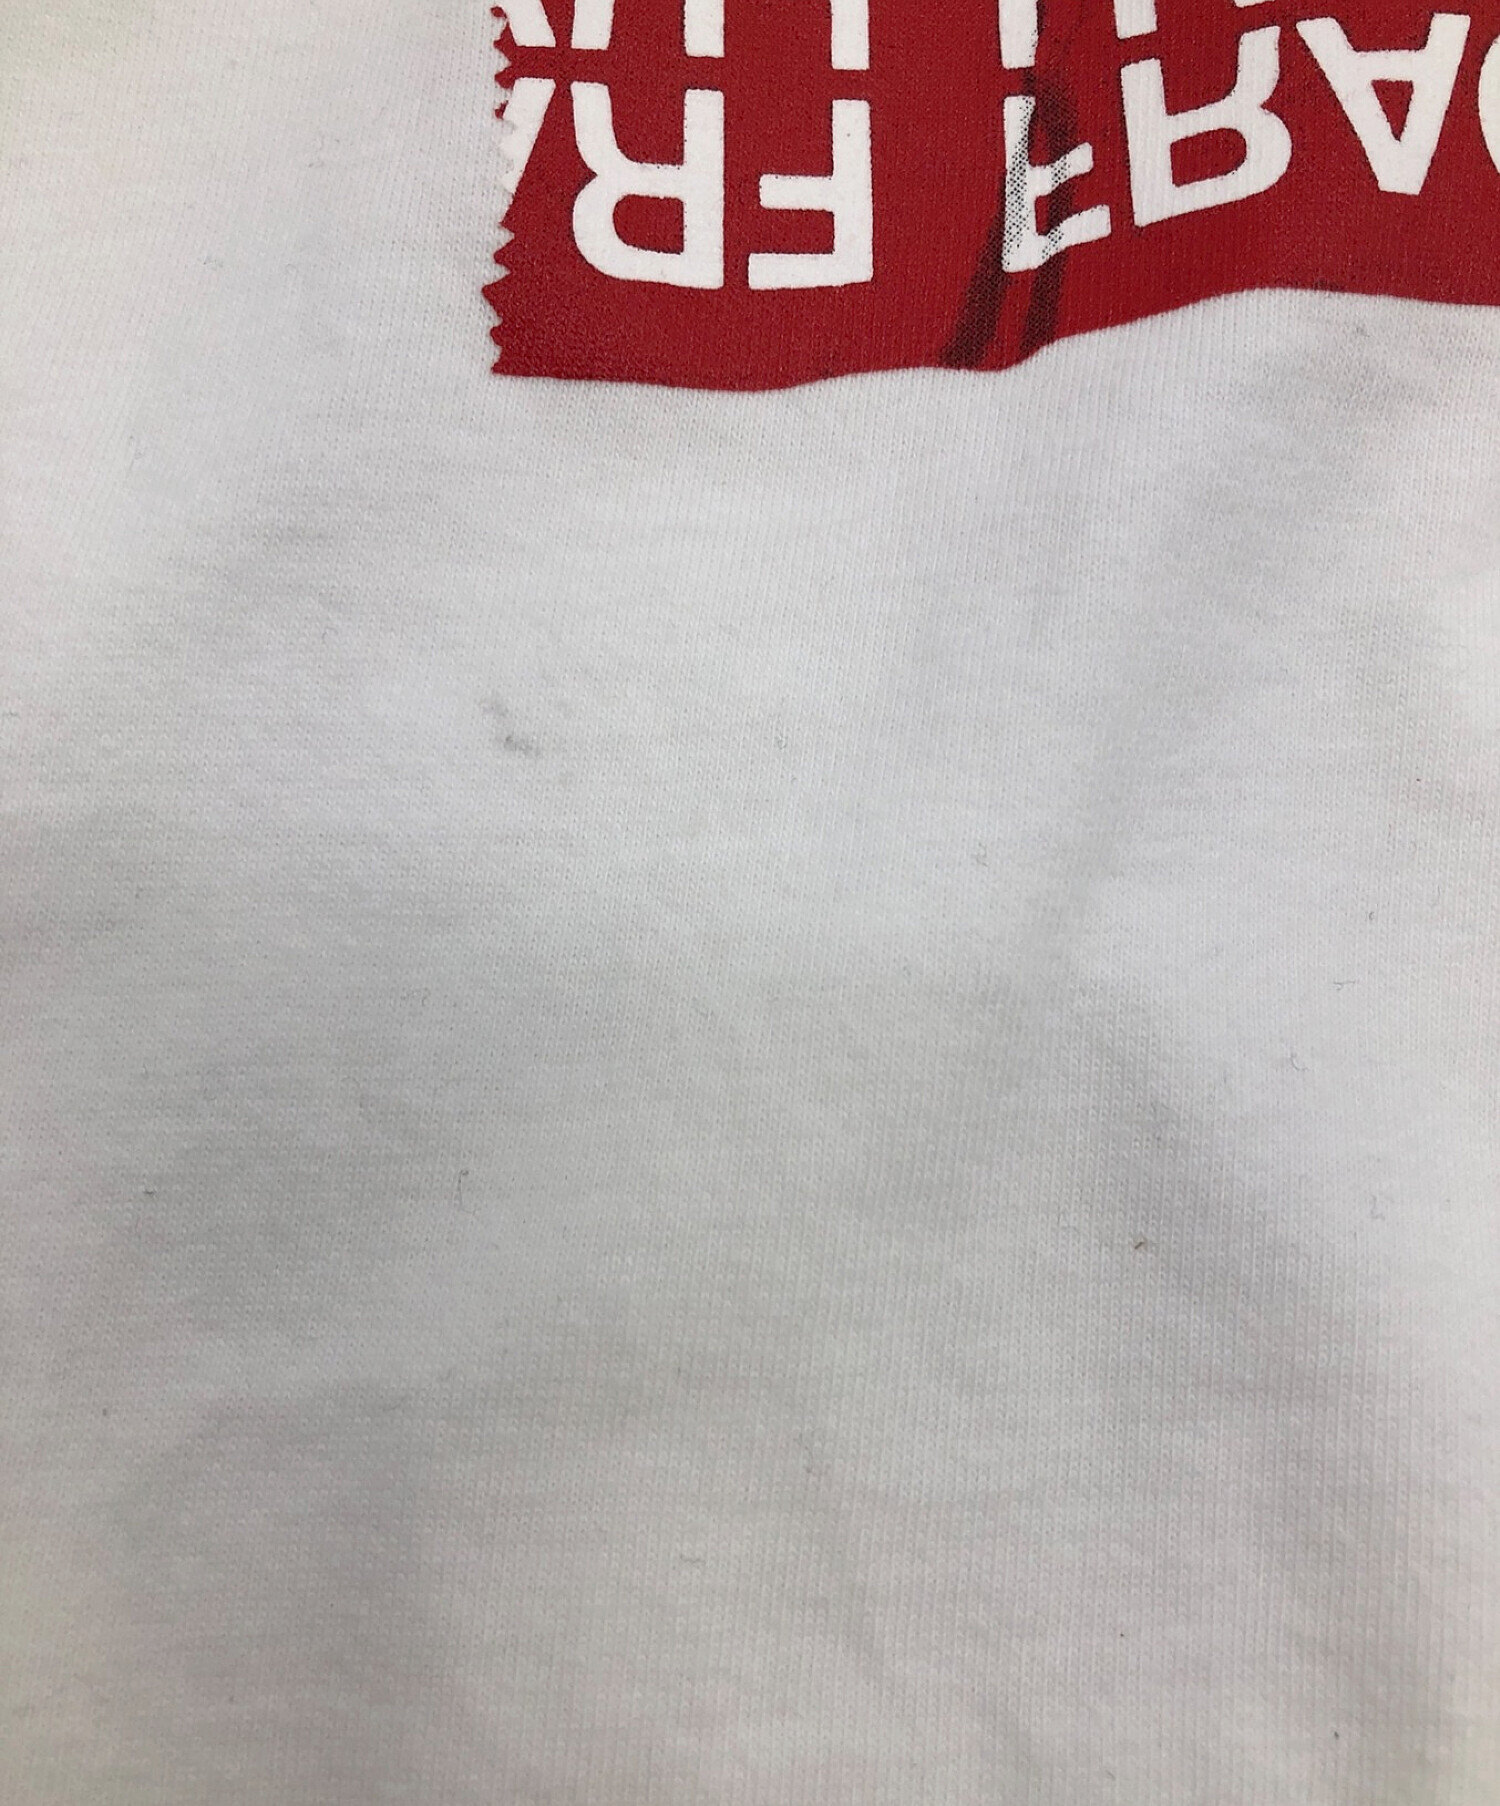 73cm身巾sacai fragment サカイ フラグメント Tシャツ サイズ２